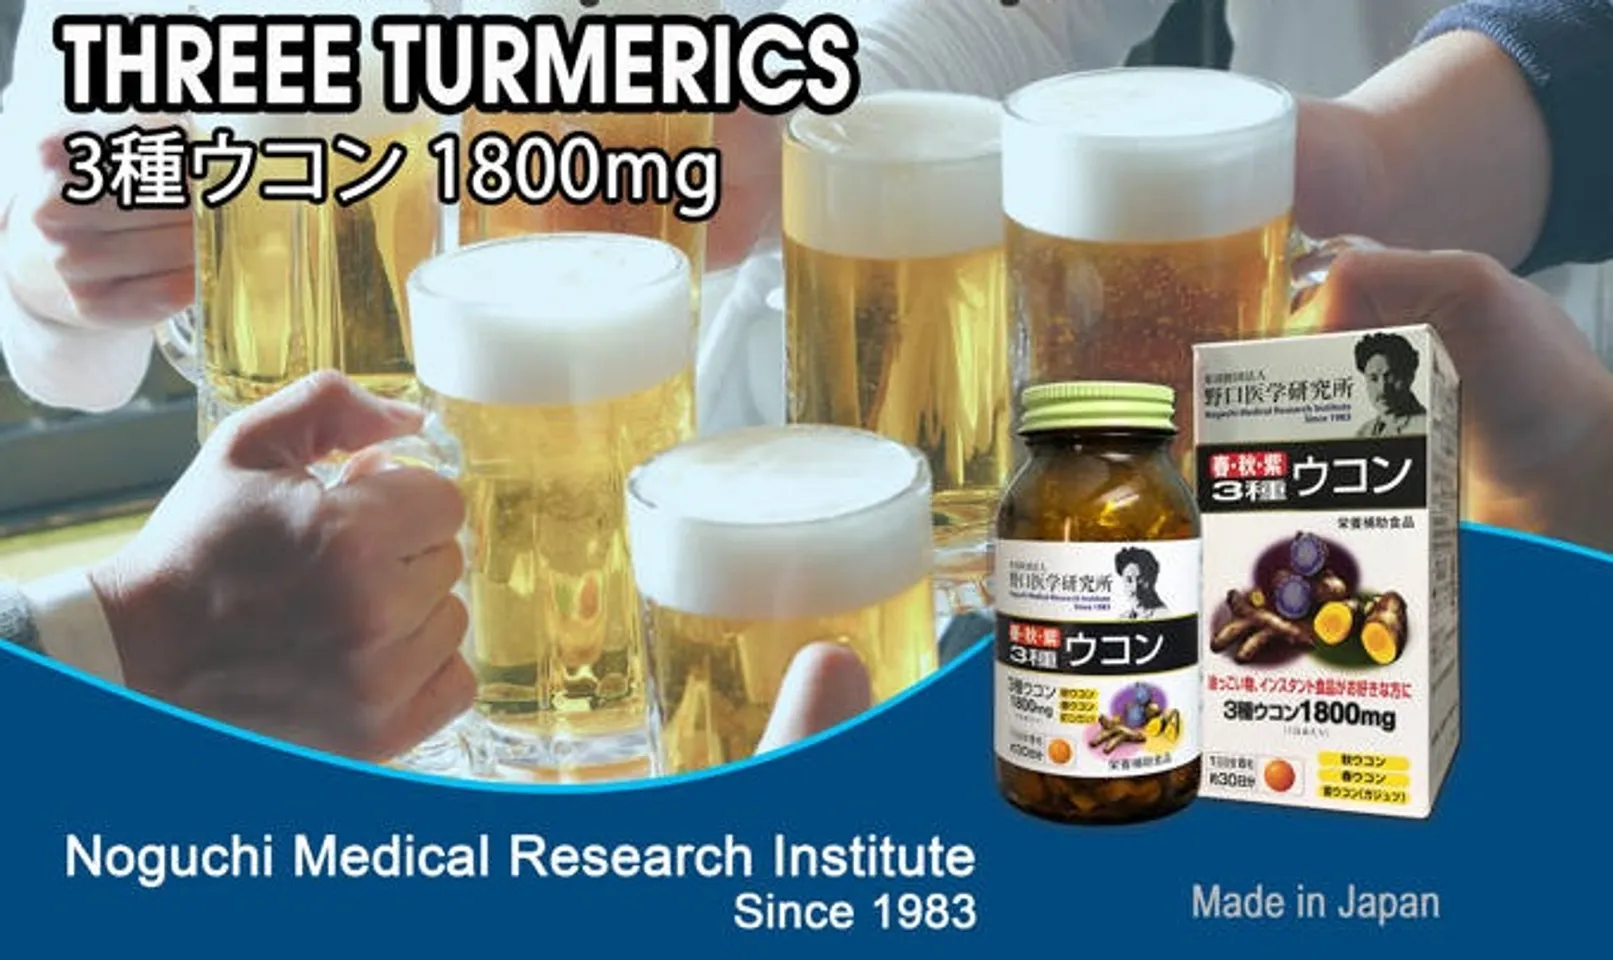 Viên uống Noguchi Three Turmerics 1800mg hỗ trợ giảm cảm giác mệt mỏi, say sỉn